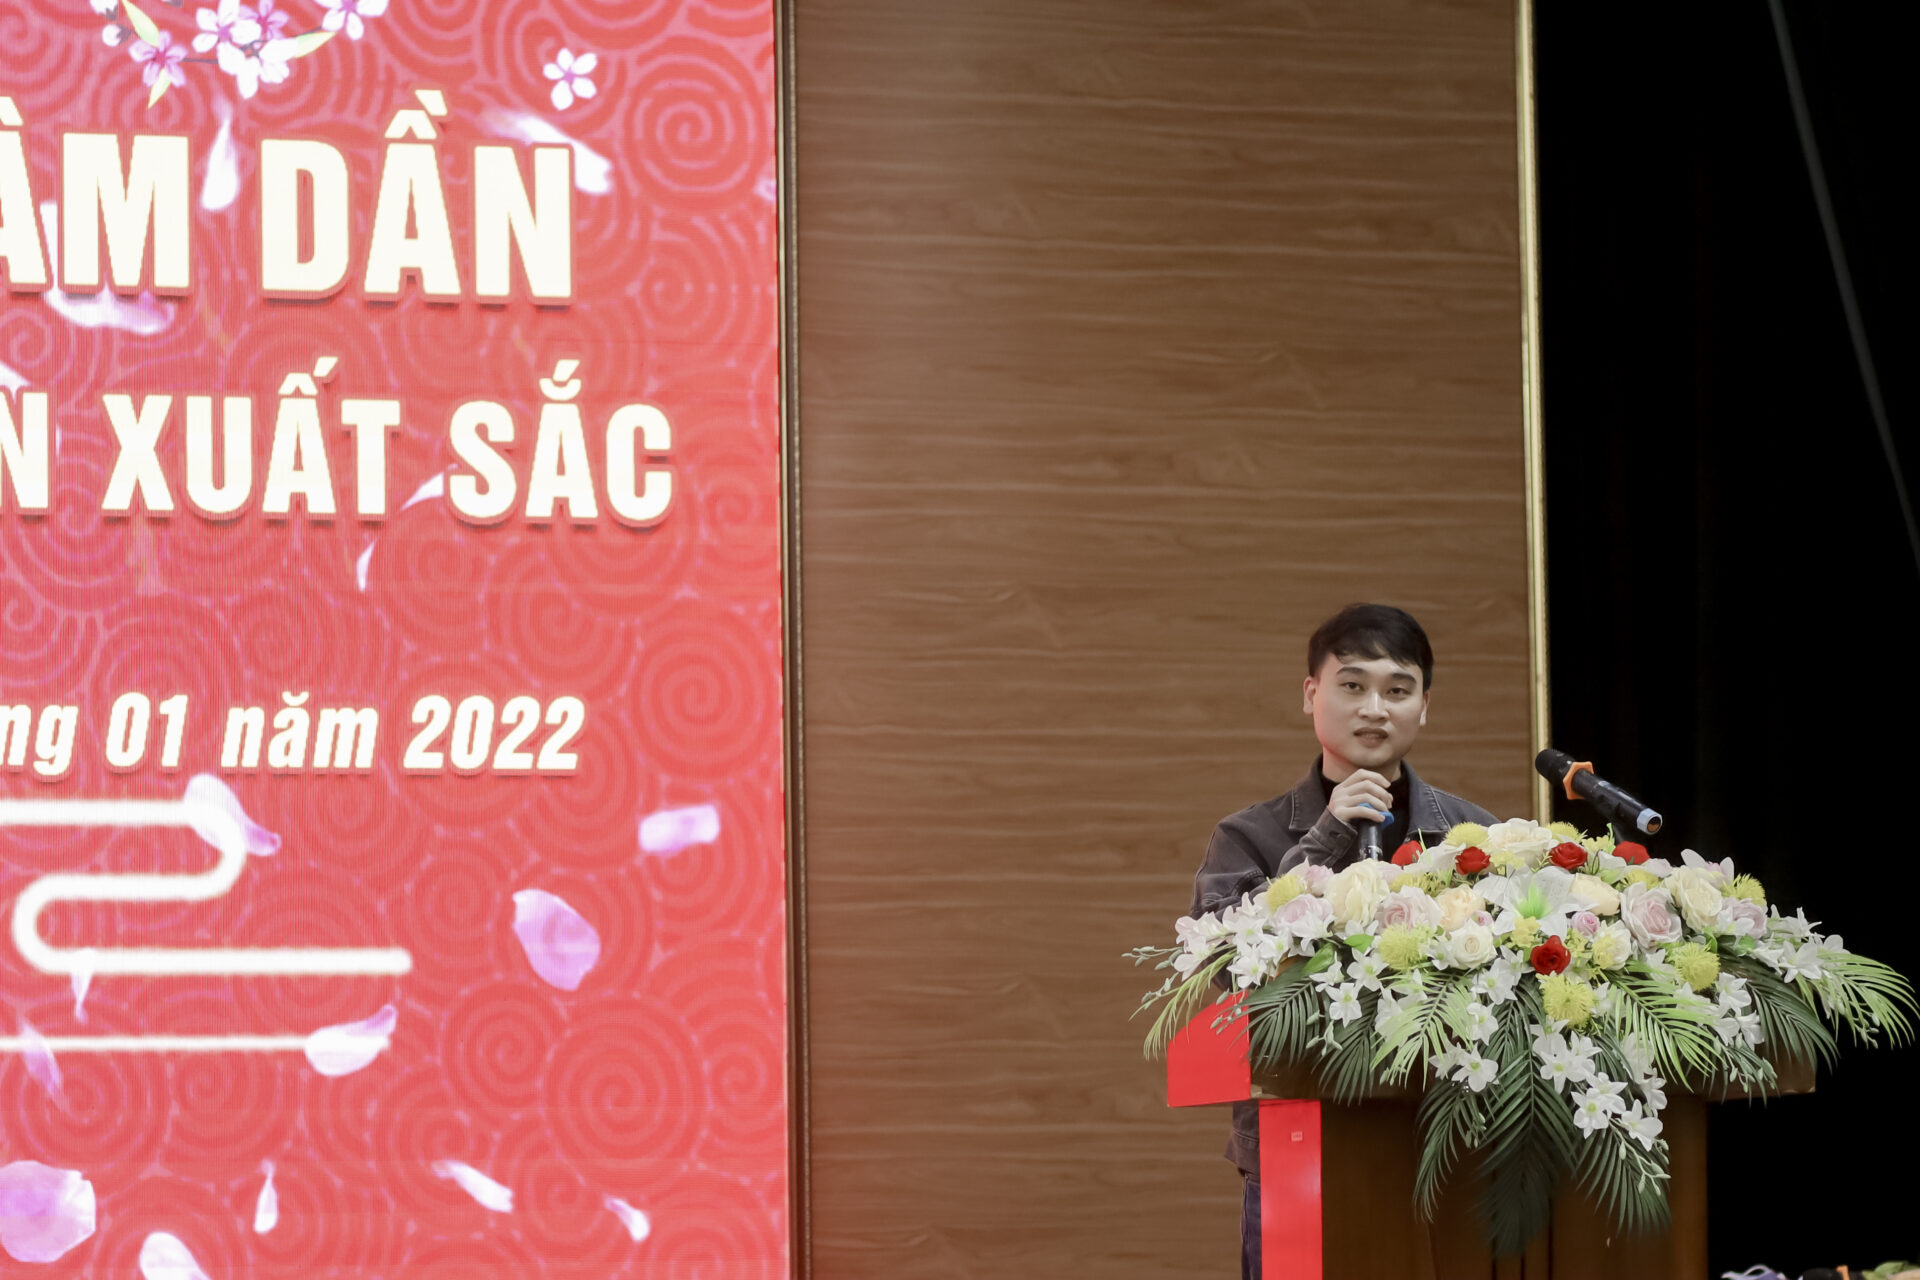 Cựu sinh viên Đỗ Trần Hoàn trao đổi tại chương trình